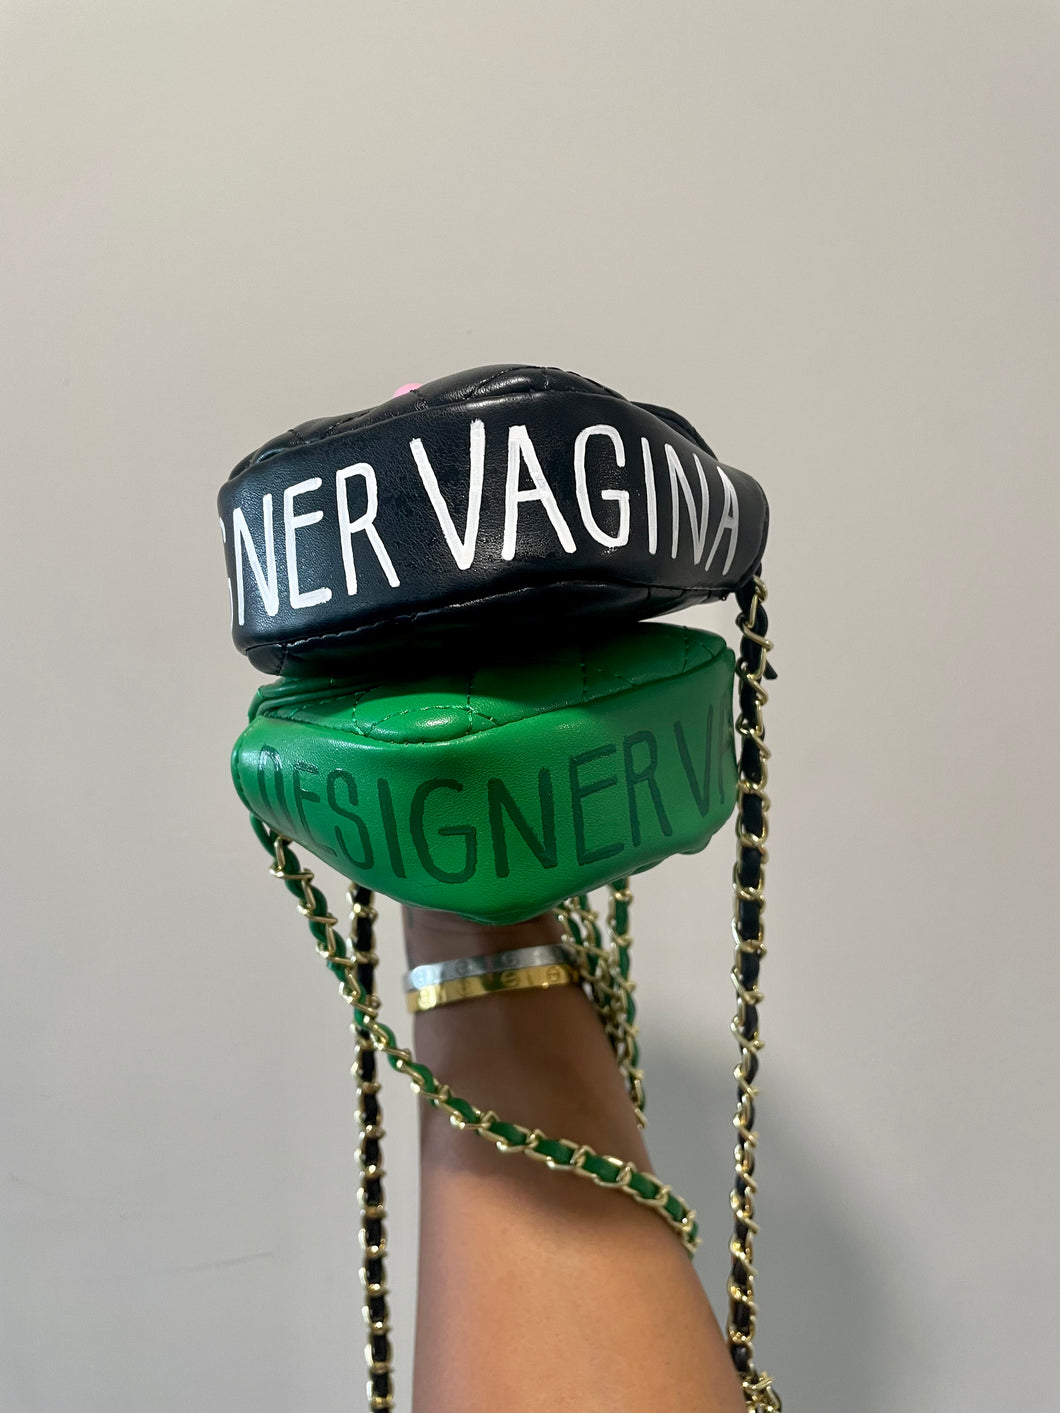 Designer Vagina